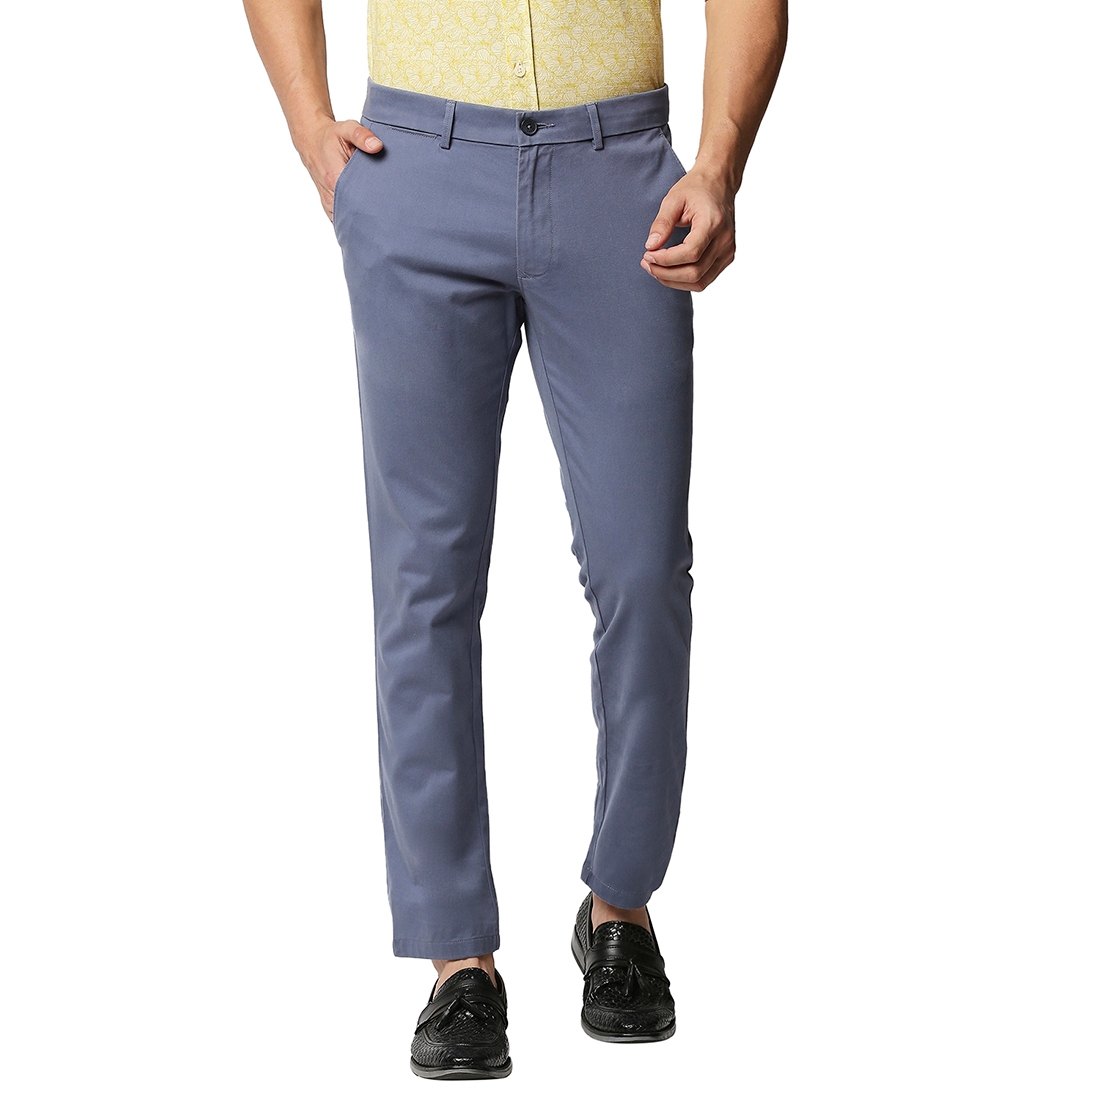 Basics | Men's Blue Cotton Blend Solid Trouser 0